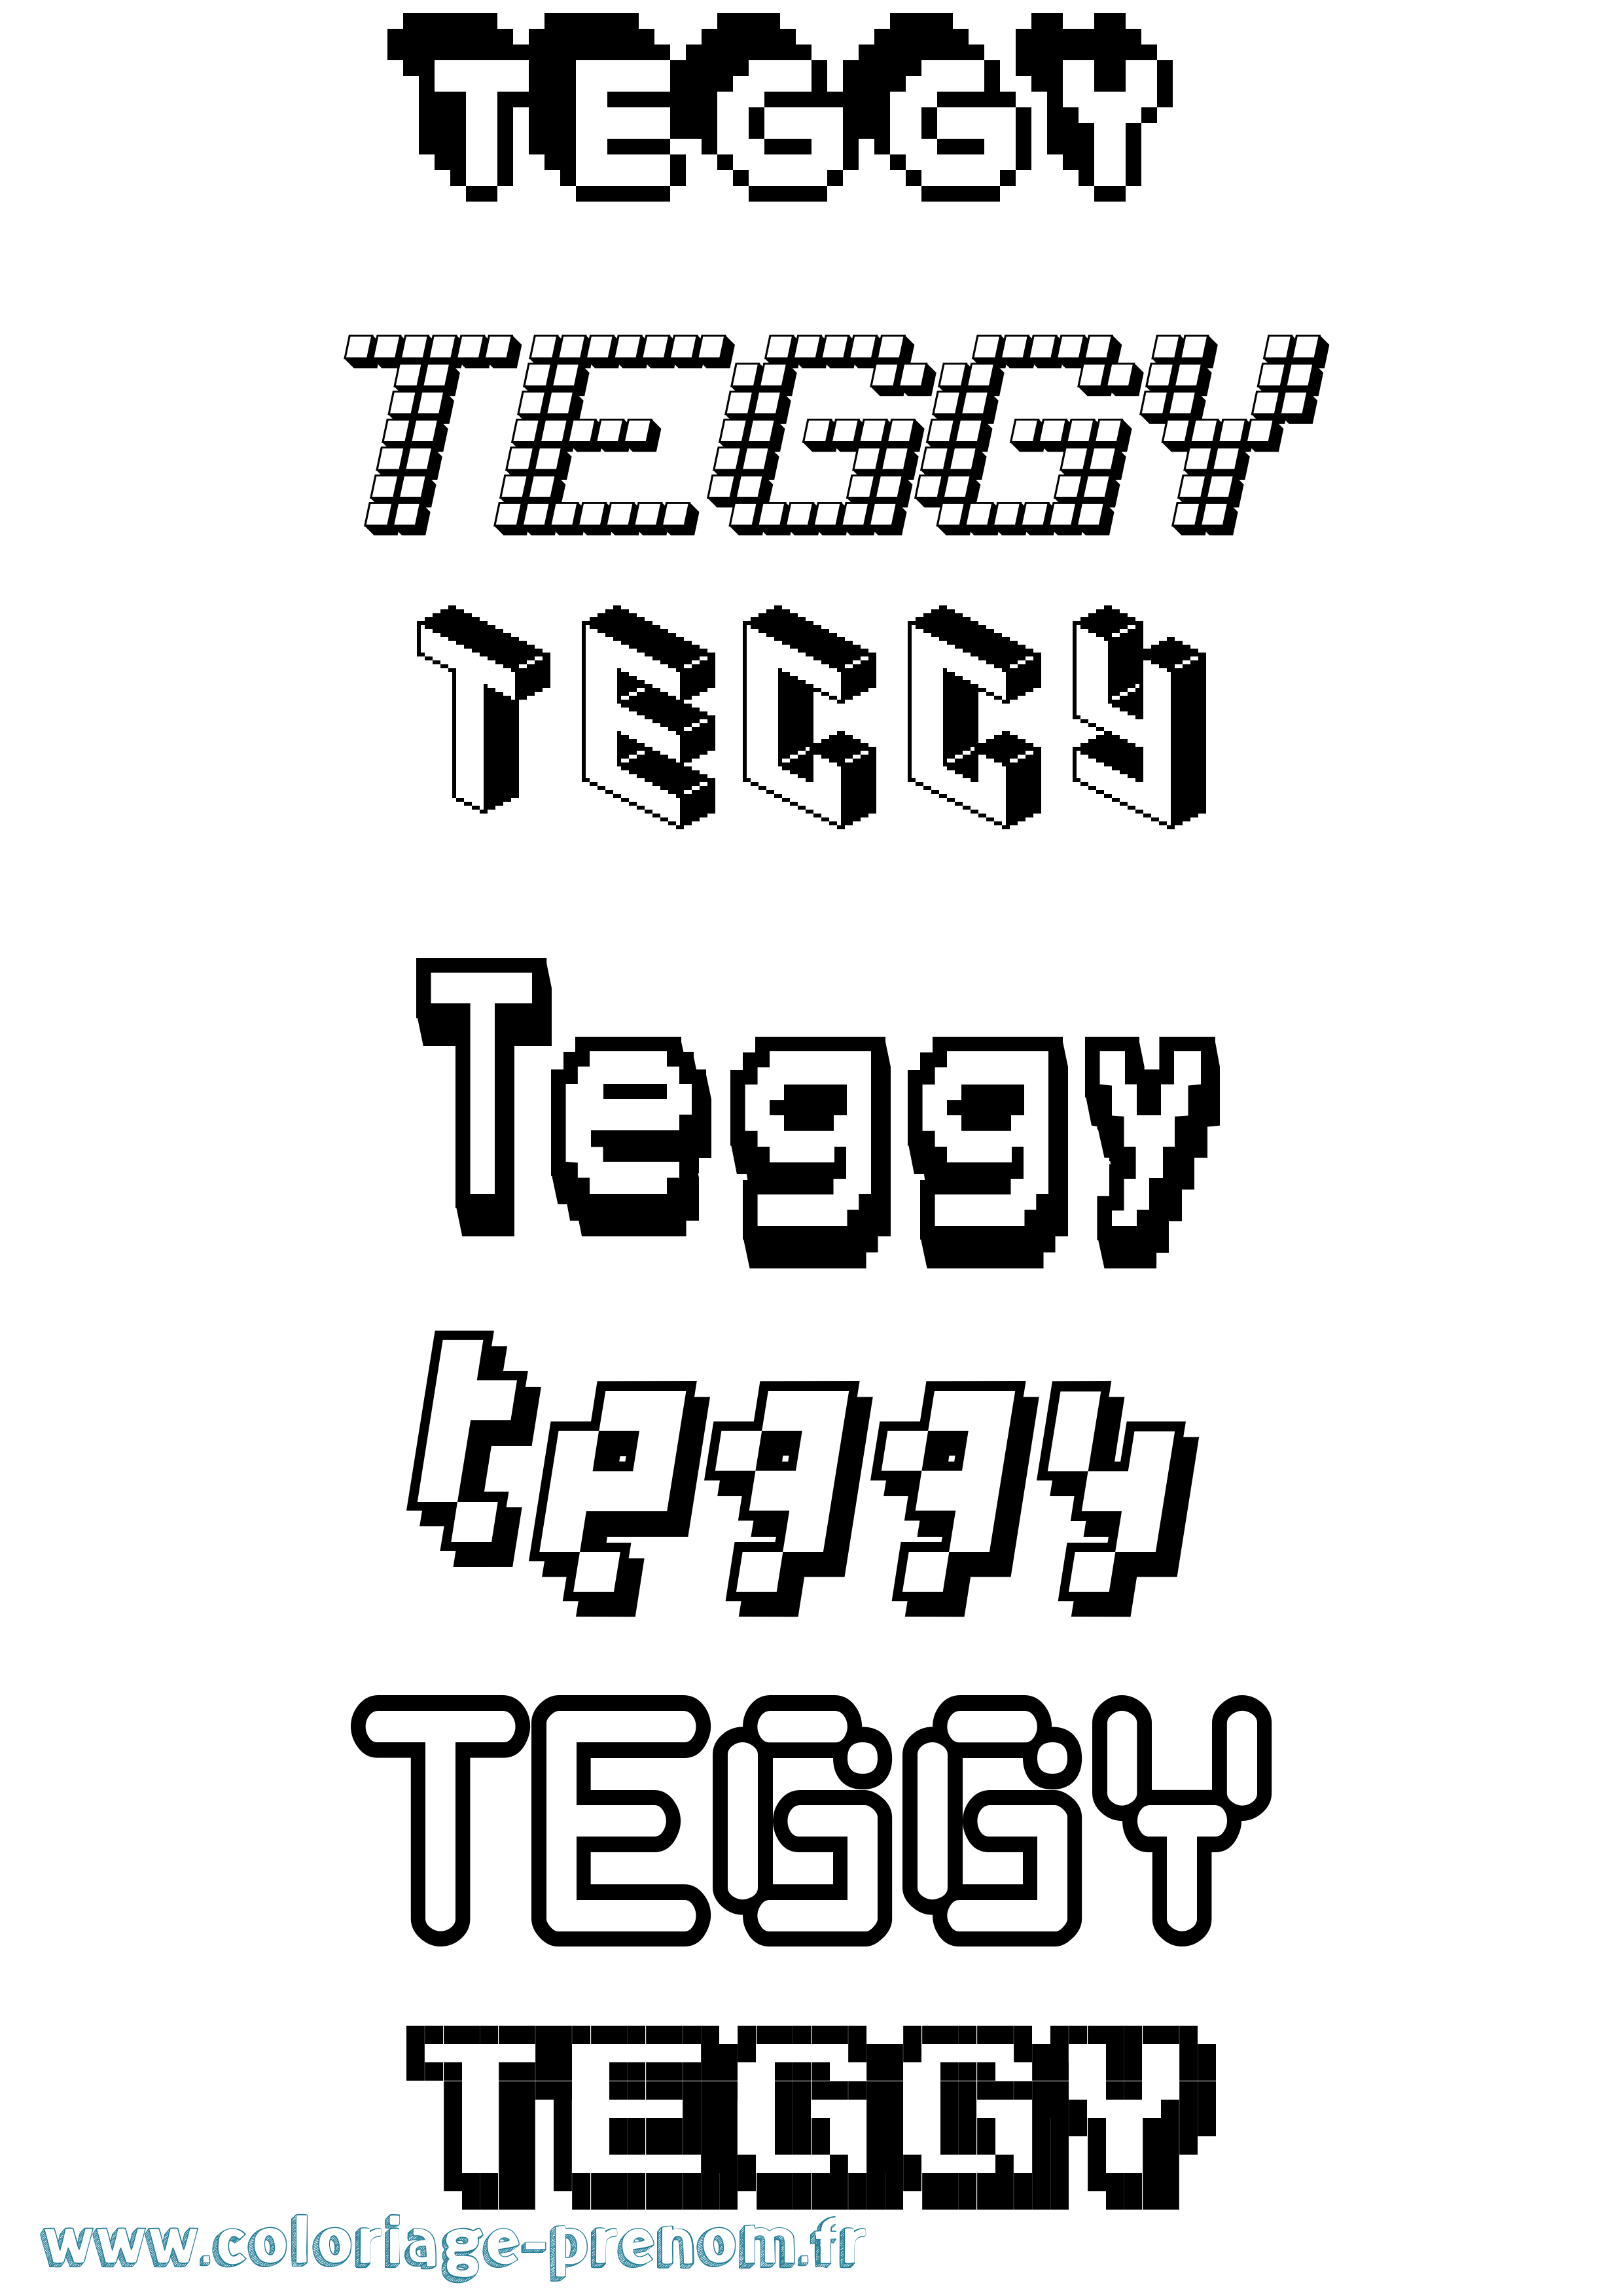 Coloriage prénom Teggy Pixel